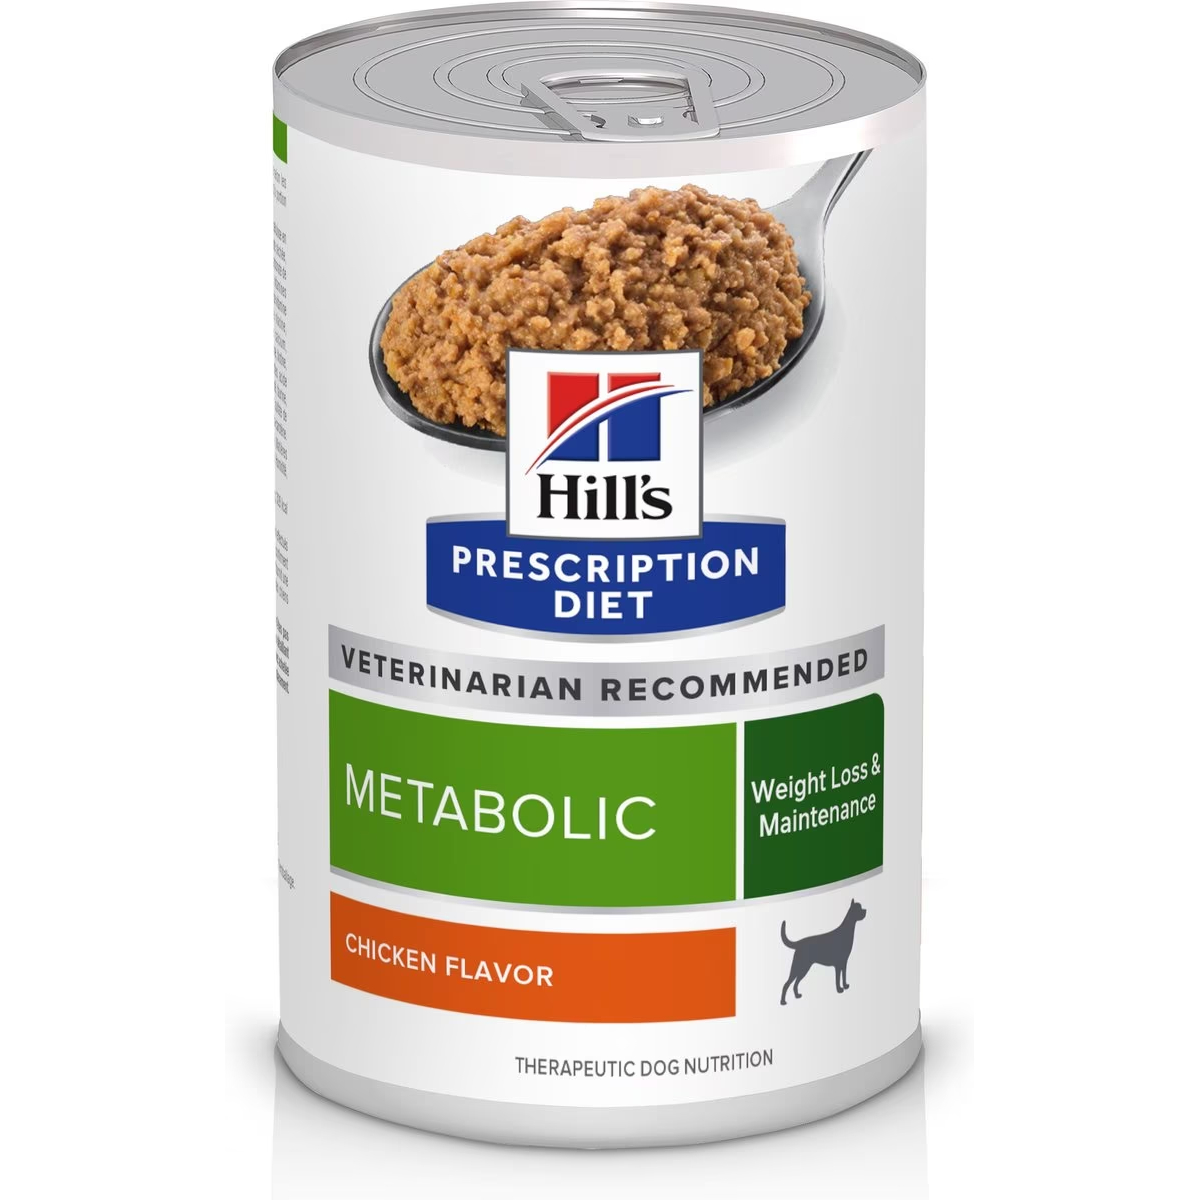 Hill's Prescription Diet Metabolic Chicken Flavor Wet Dog Food